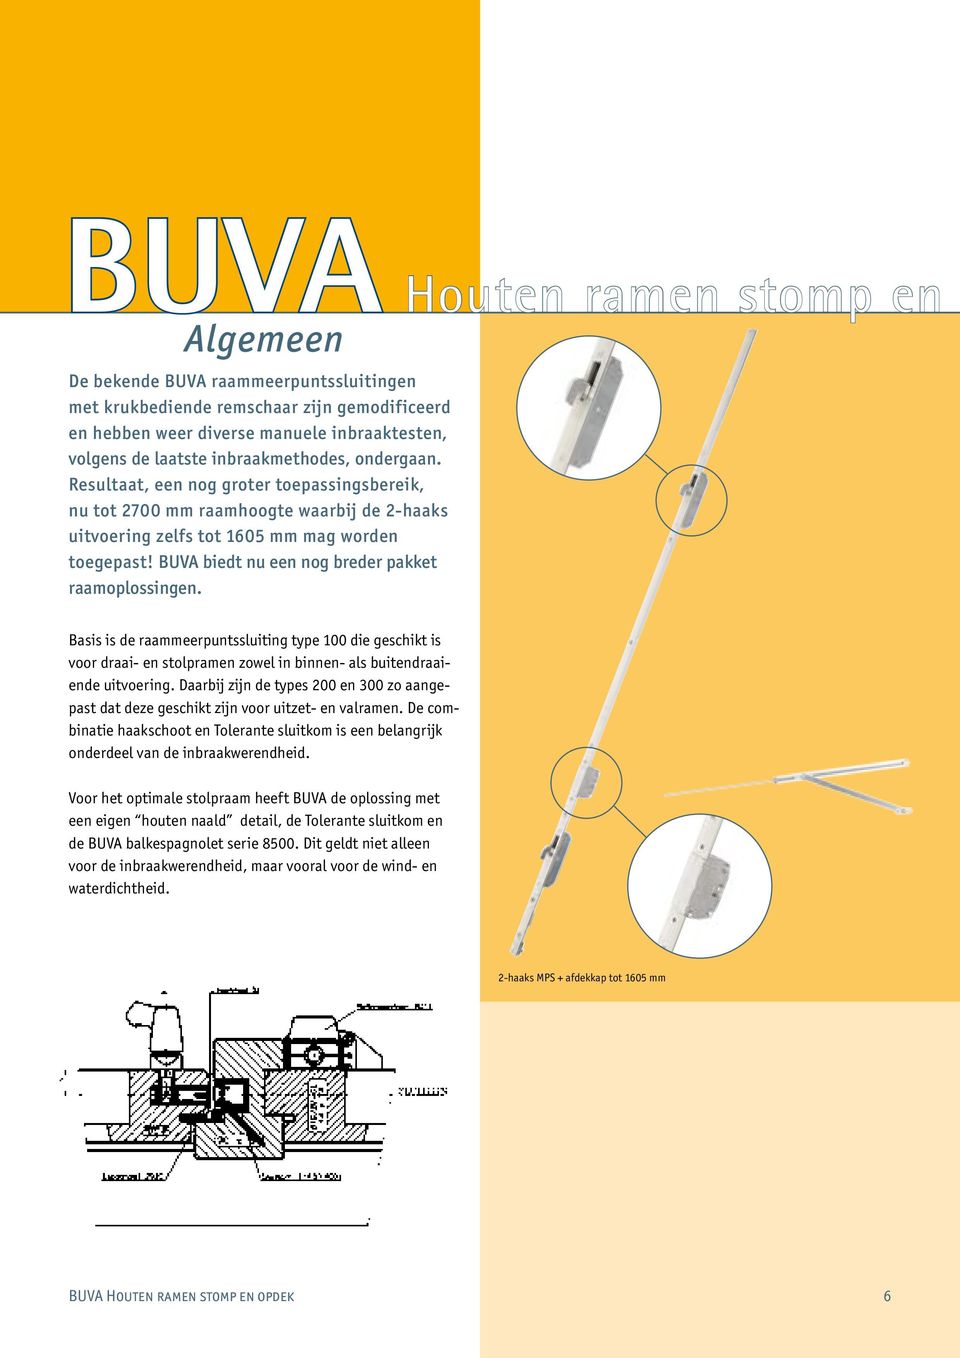 BUVA biedt nu een nog breder pakket raamoplossingen. Basis is de raammeerpuntssluiting type 100 die geschikt is voor draai- en stolpramen zowel in binnen- als buitendraaiende uitvoering.